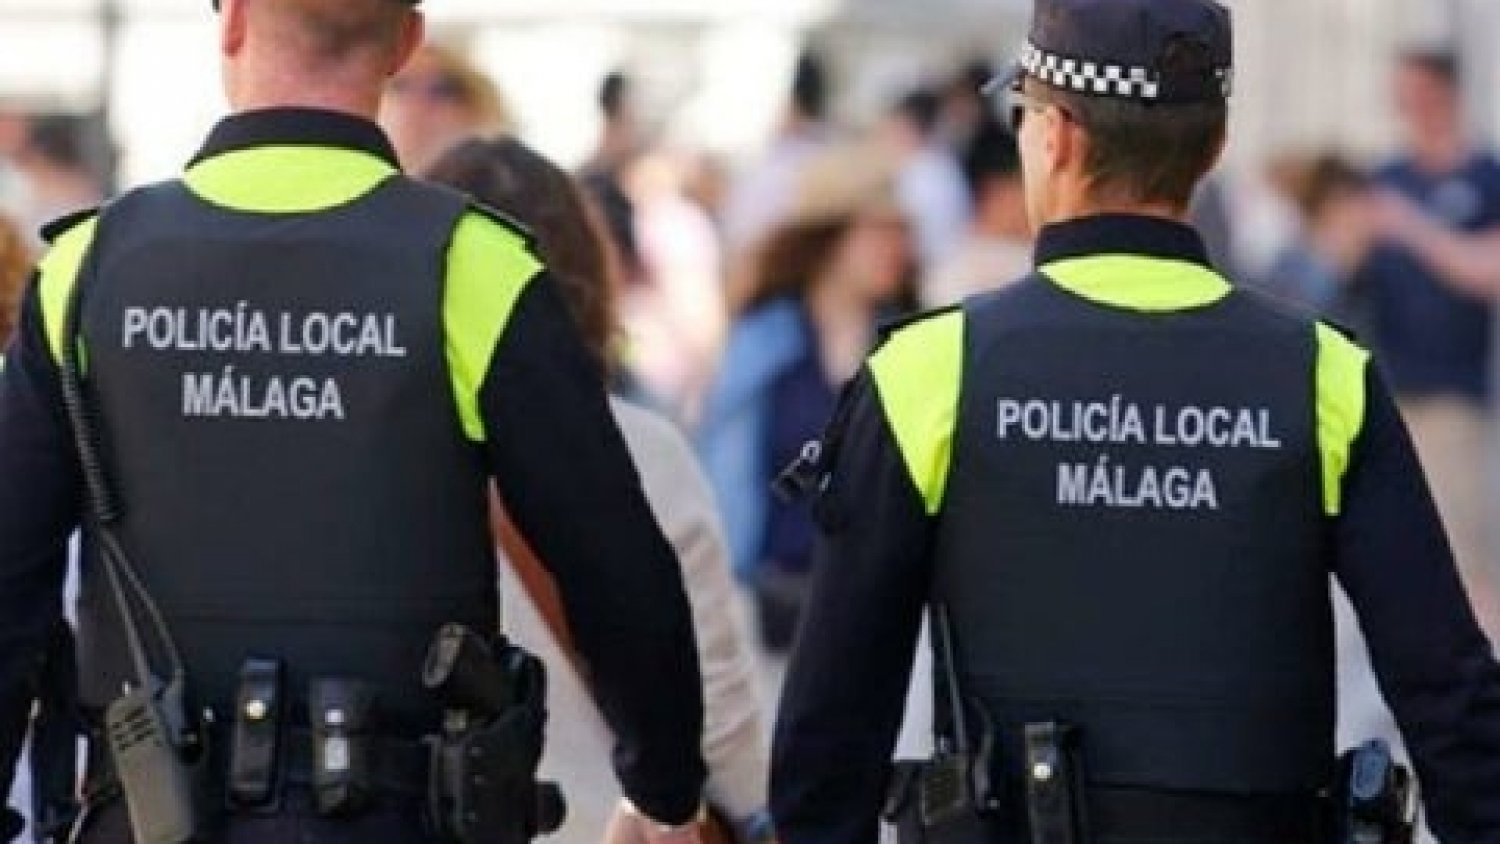 La Policía Local tramita 116 denuncias en materia de control de ruidos y convivencia ciudadana